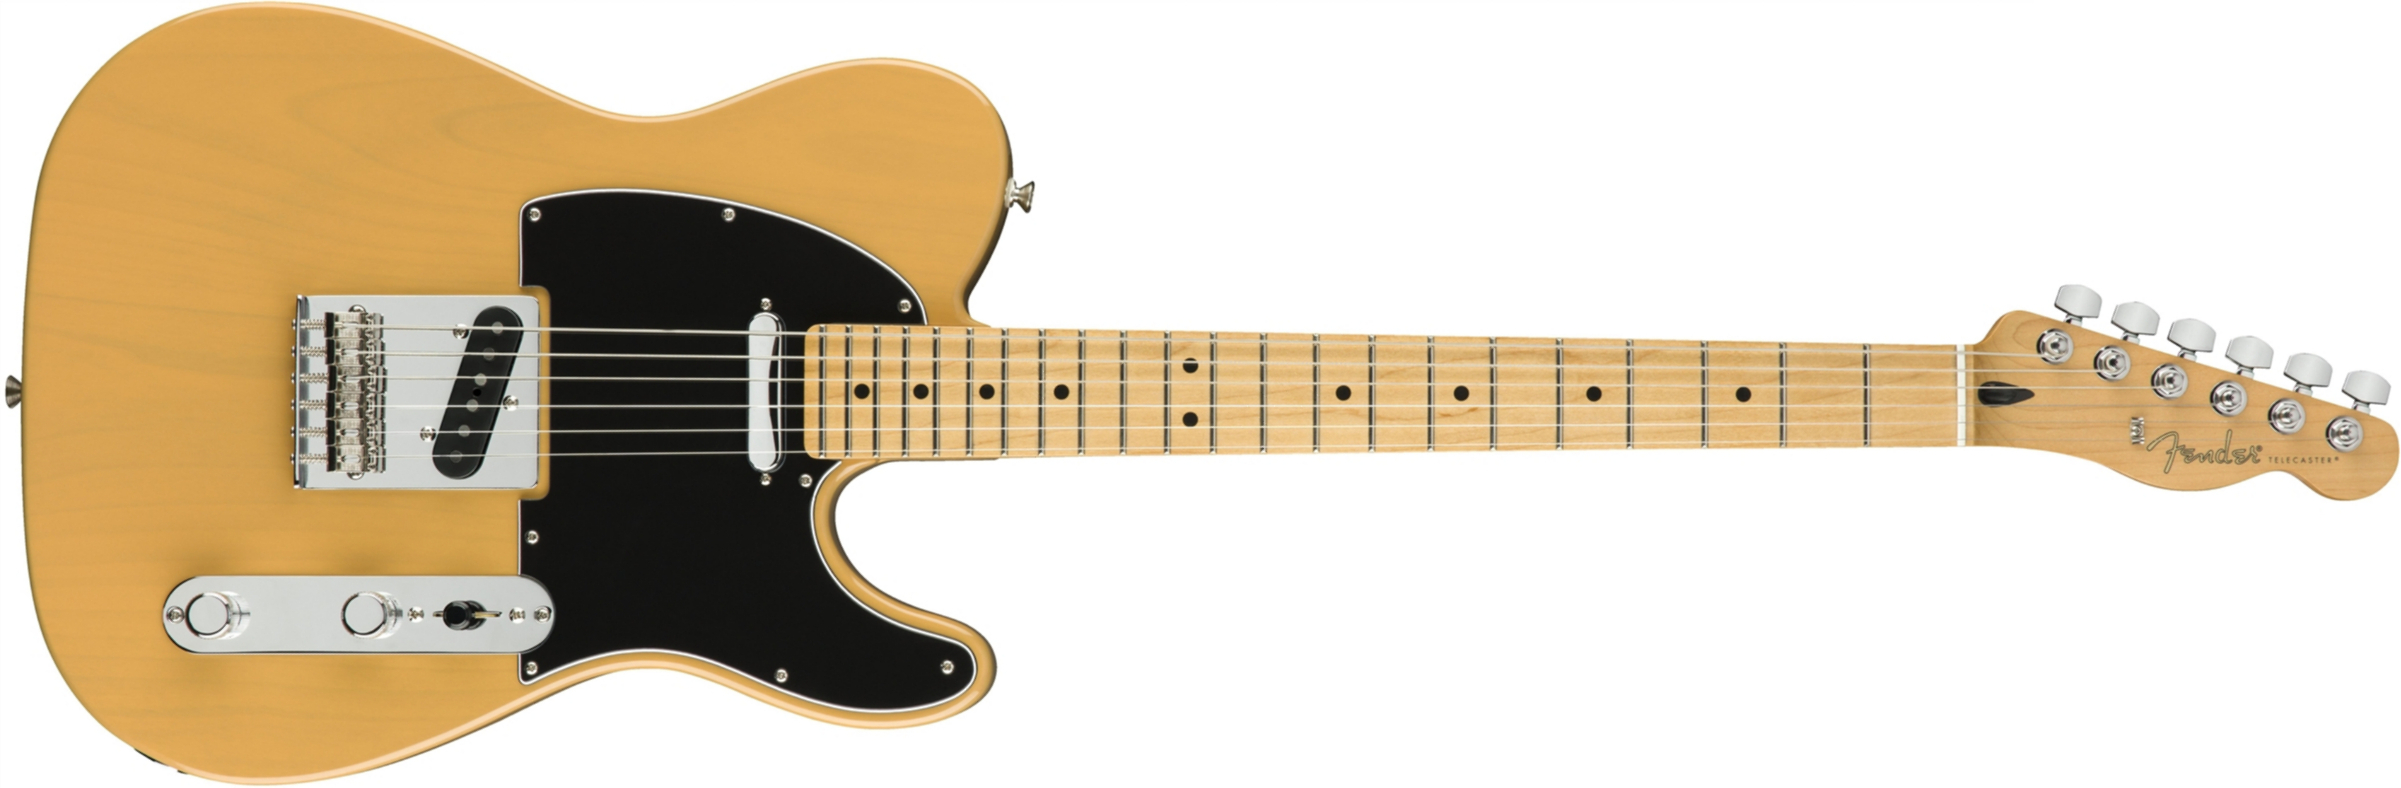 Fender Tele Player Mex Mn - Butterscotch Blonde - Televorm elektrische gitaar - Main picture